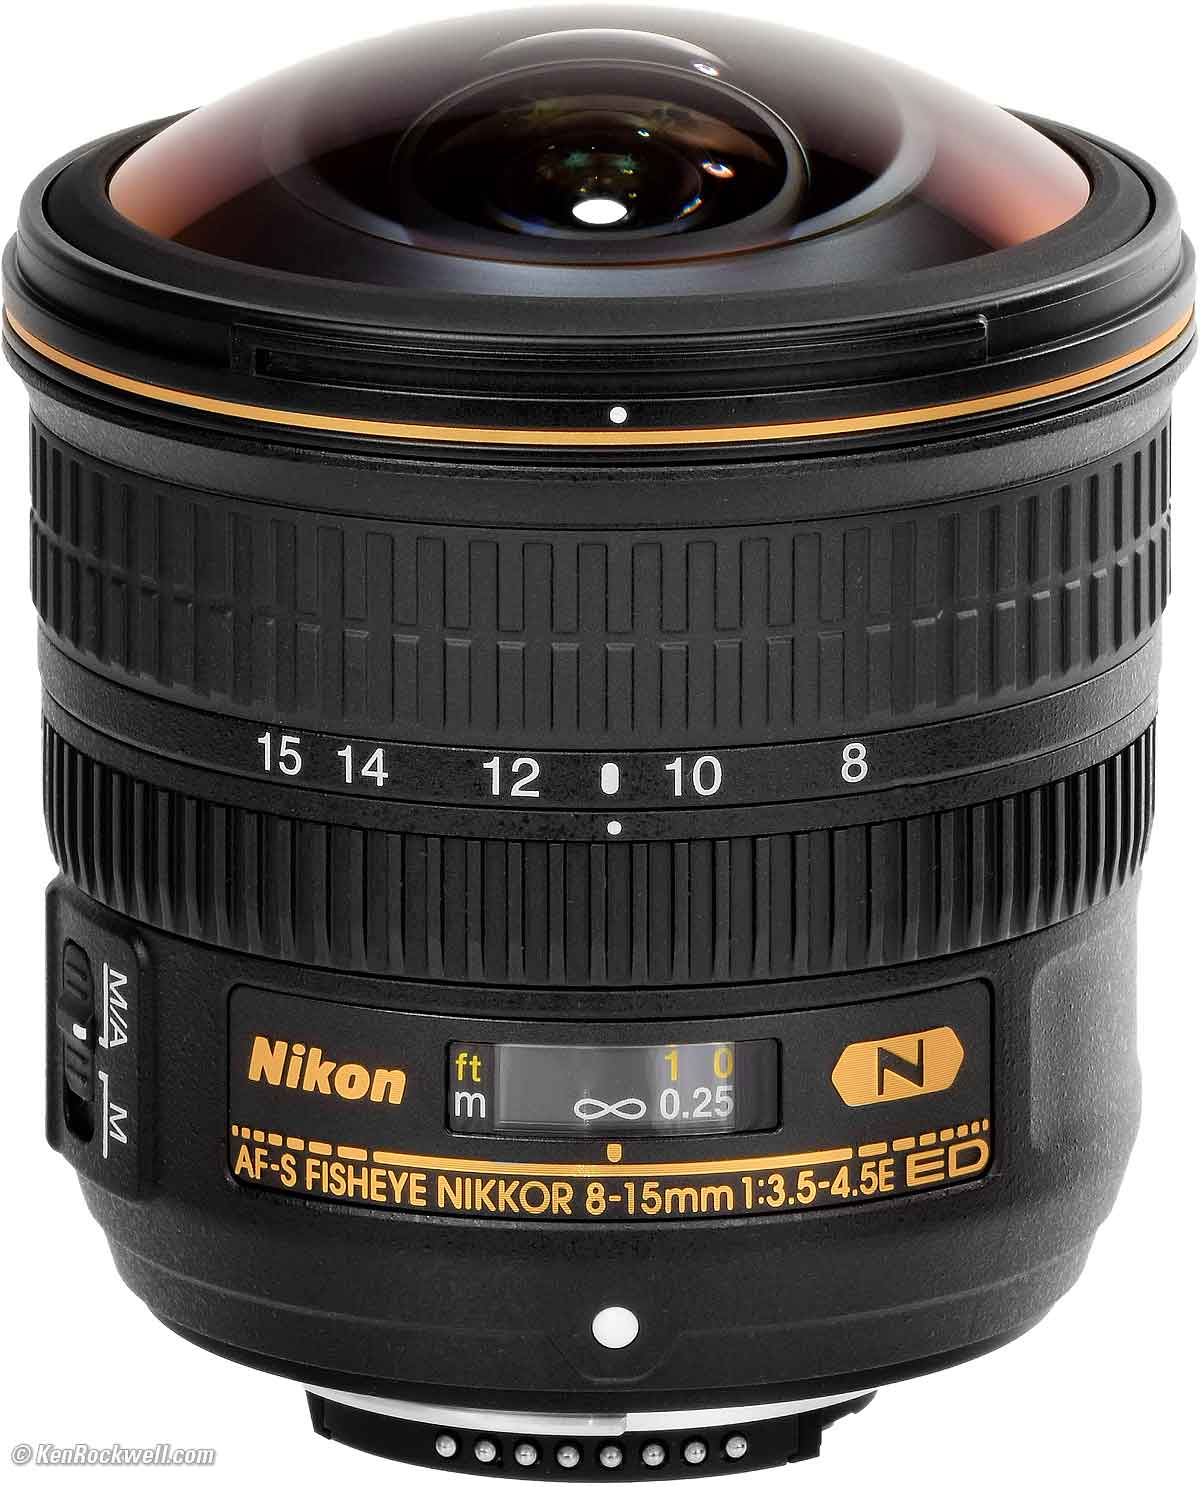 Nikon 8-15mm Review